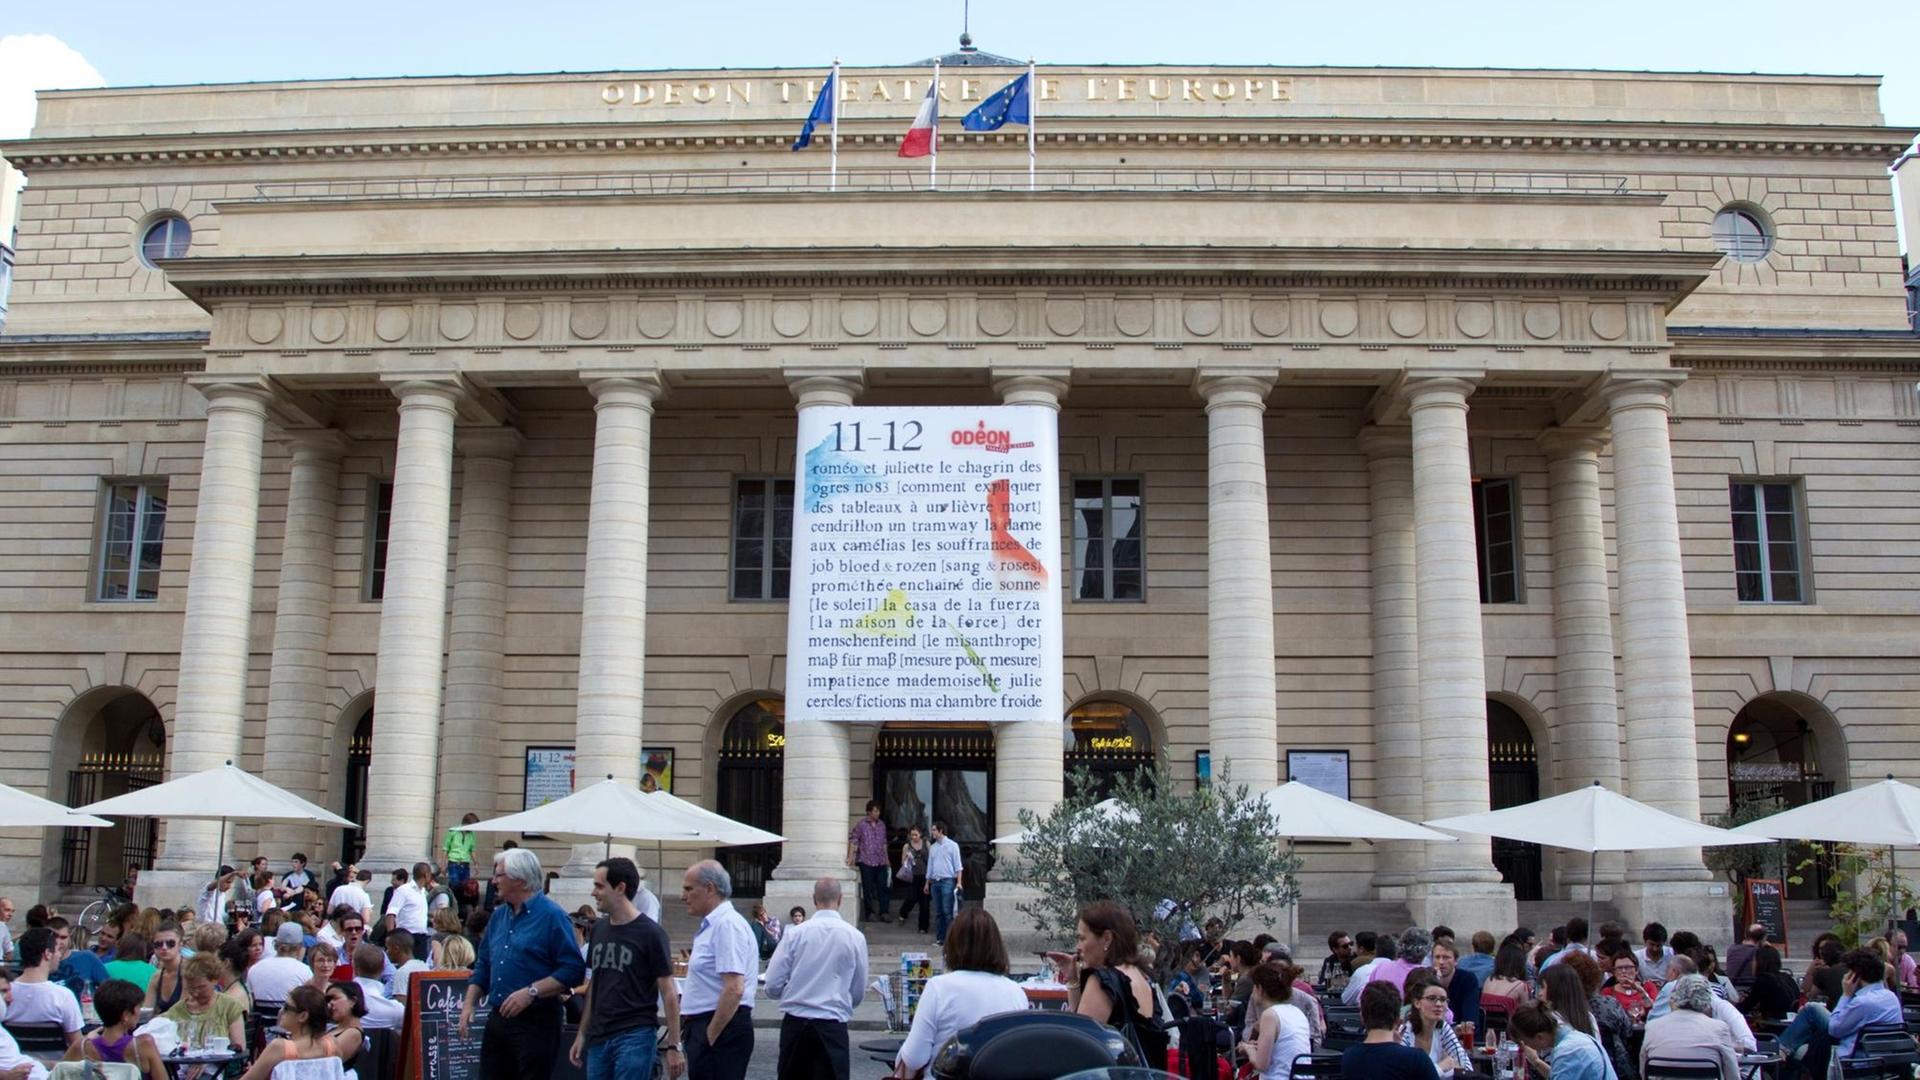 Blick auf das Théâtre de l'Odéon in Paris, Frankreich. Davor sitzen Menschen auf einem Platz an Tischen.